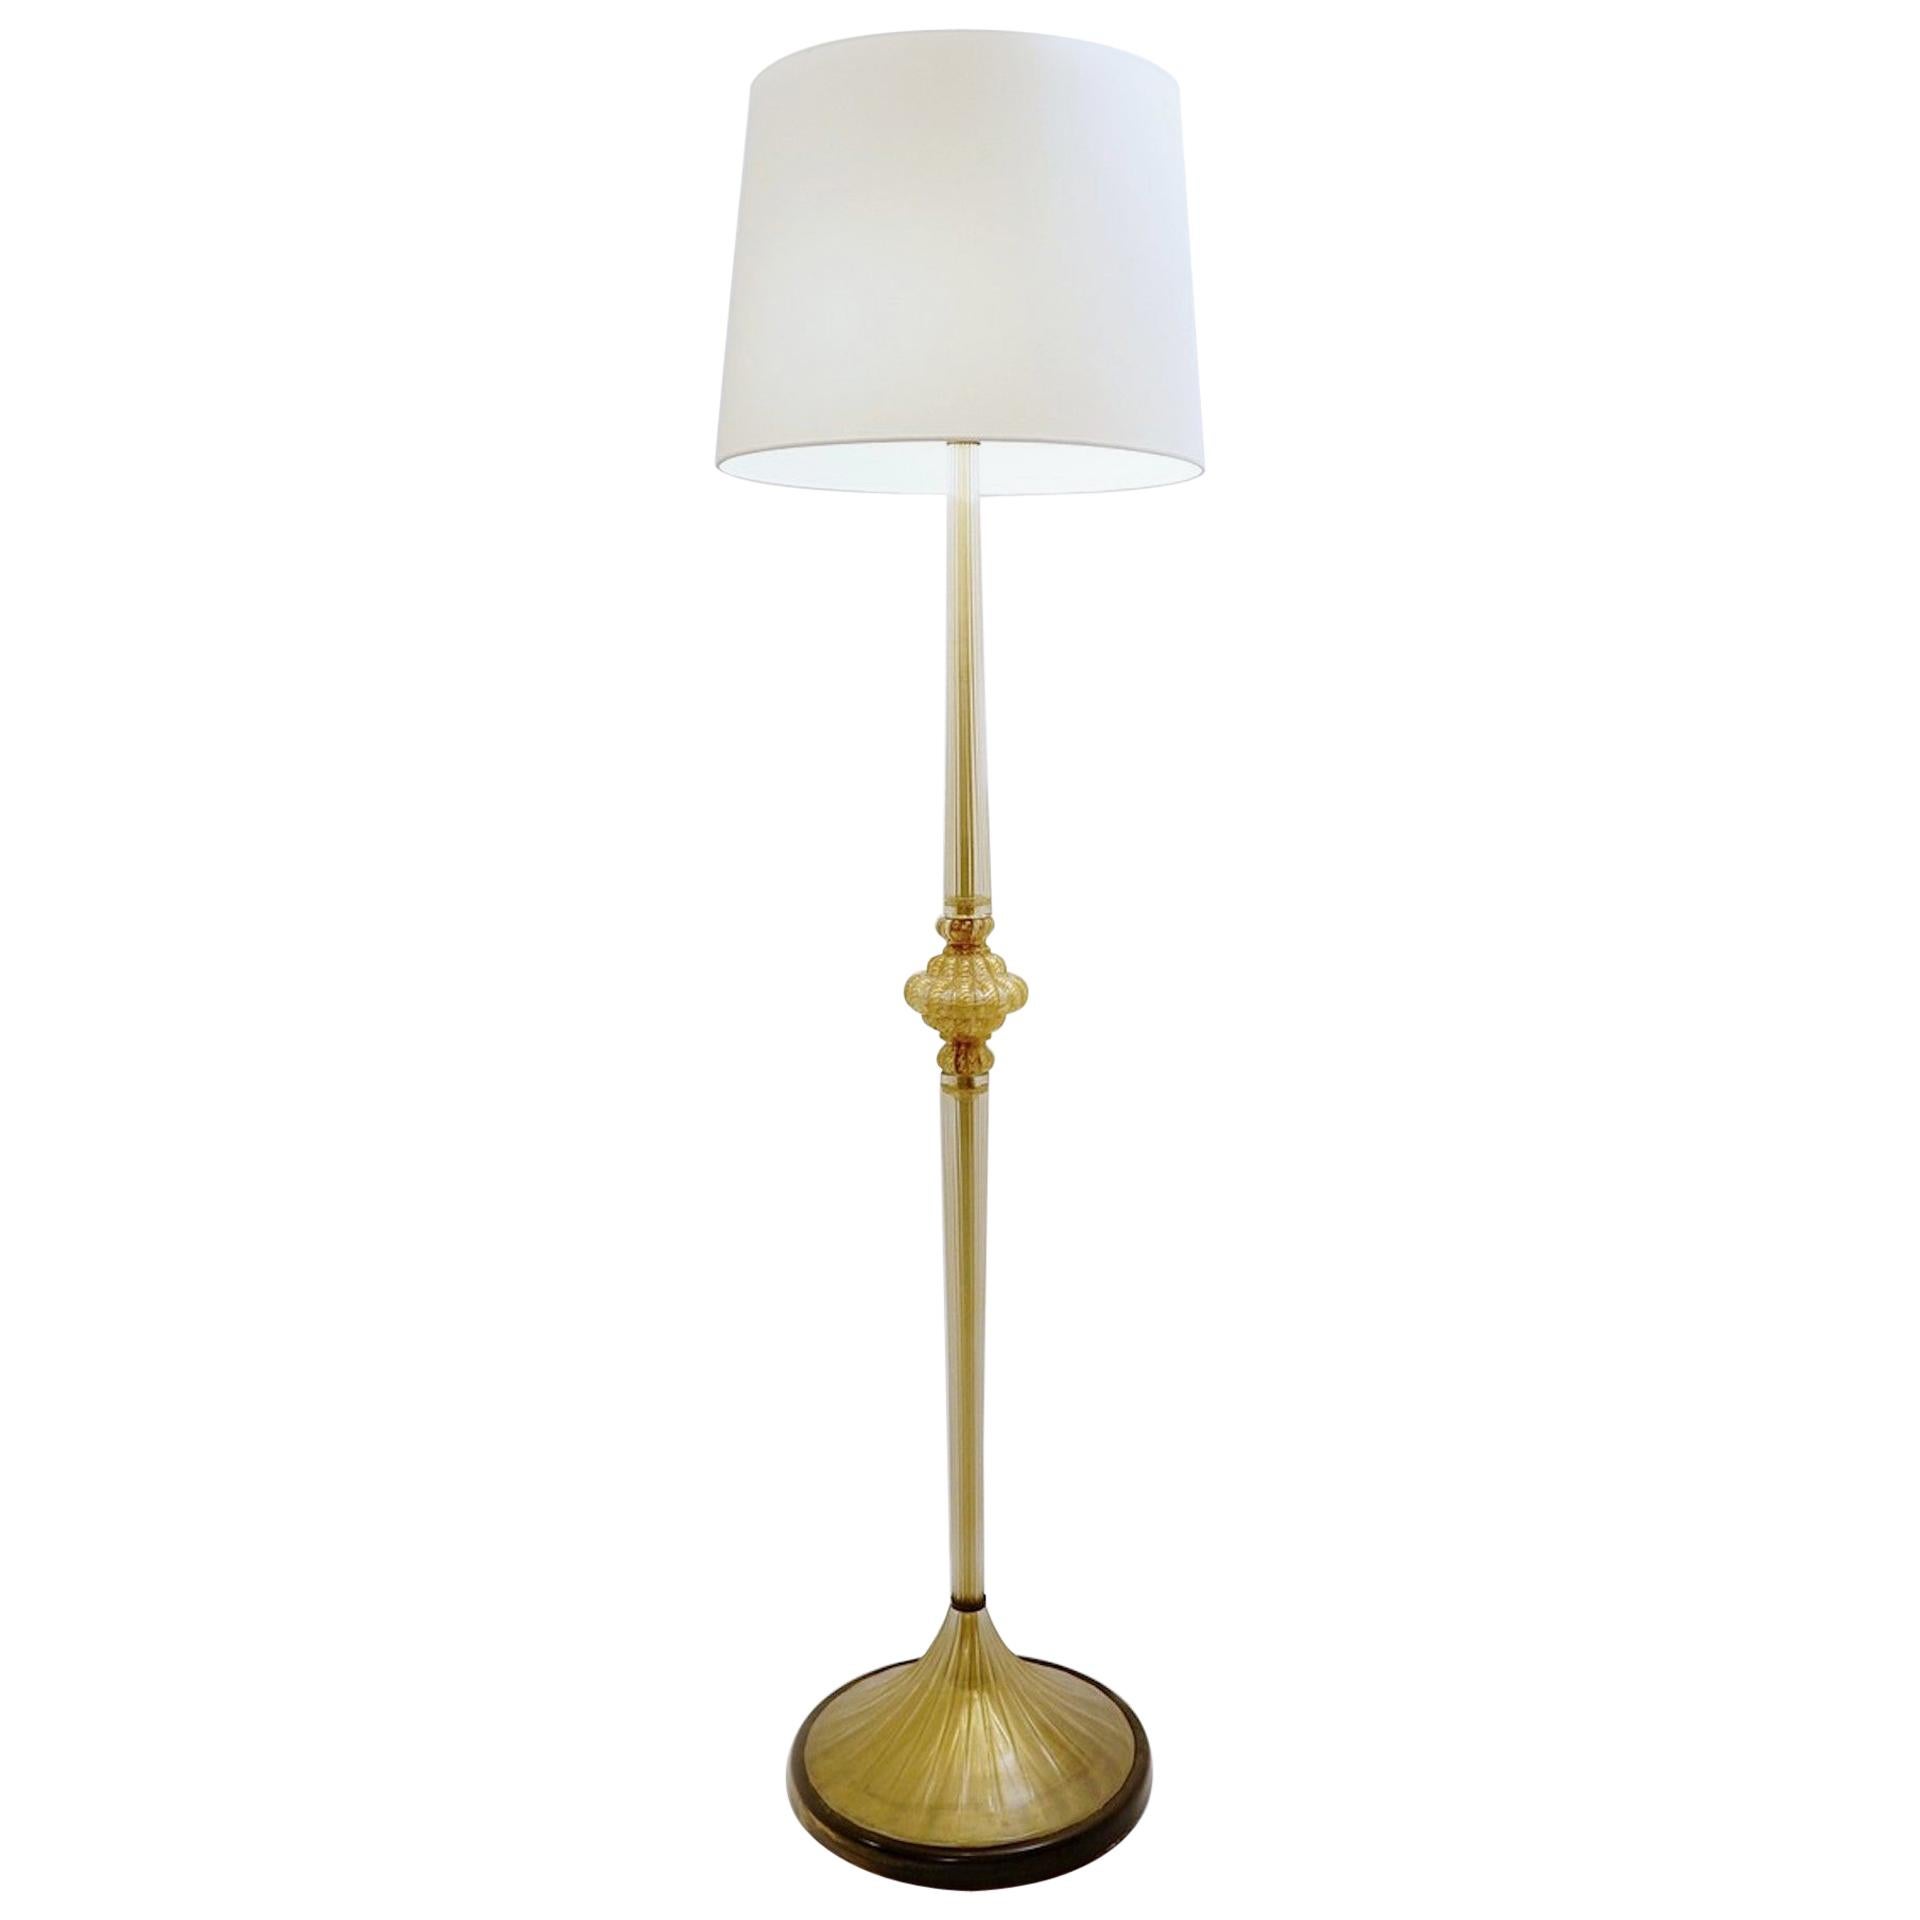 Barovier & Toso ‘Cordonato D’Oro’ Murano Table Lamp, 1950s